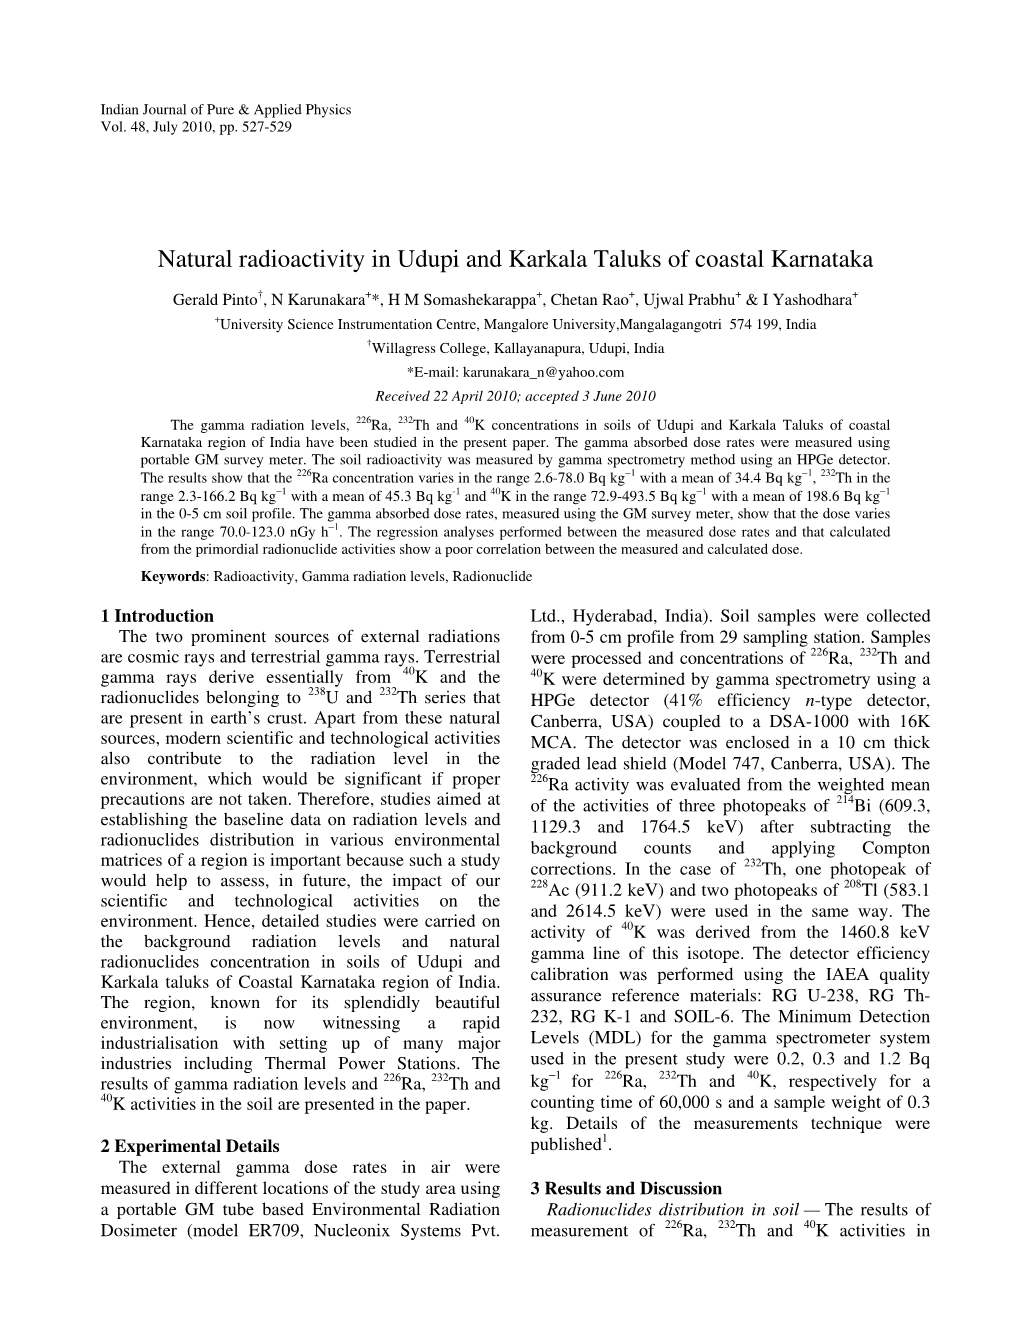 Natural Radioactivity in Udupi and Karkala Taluks of Coastal Karnataka